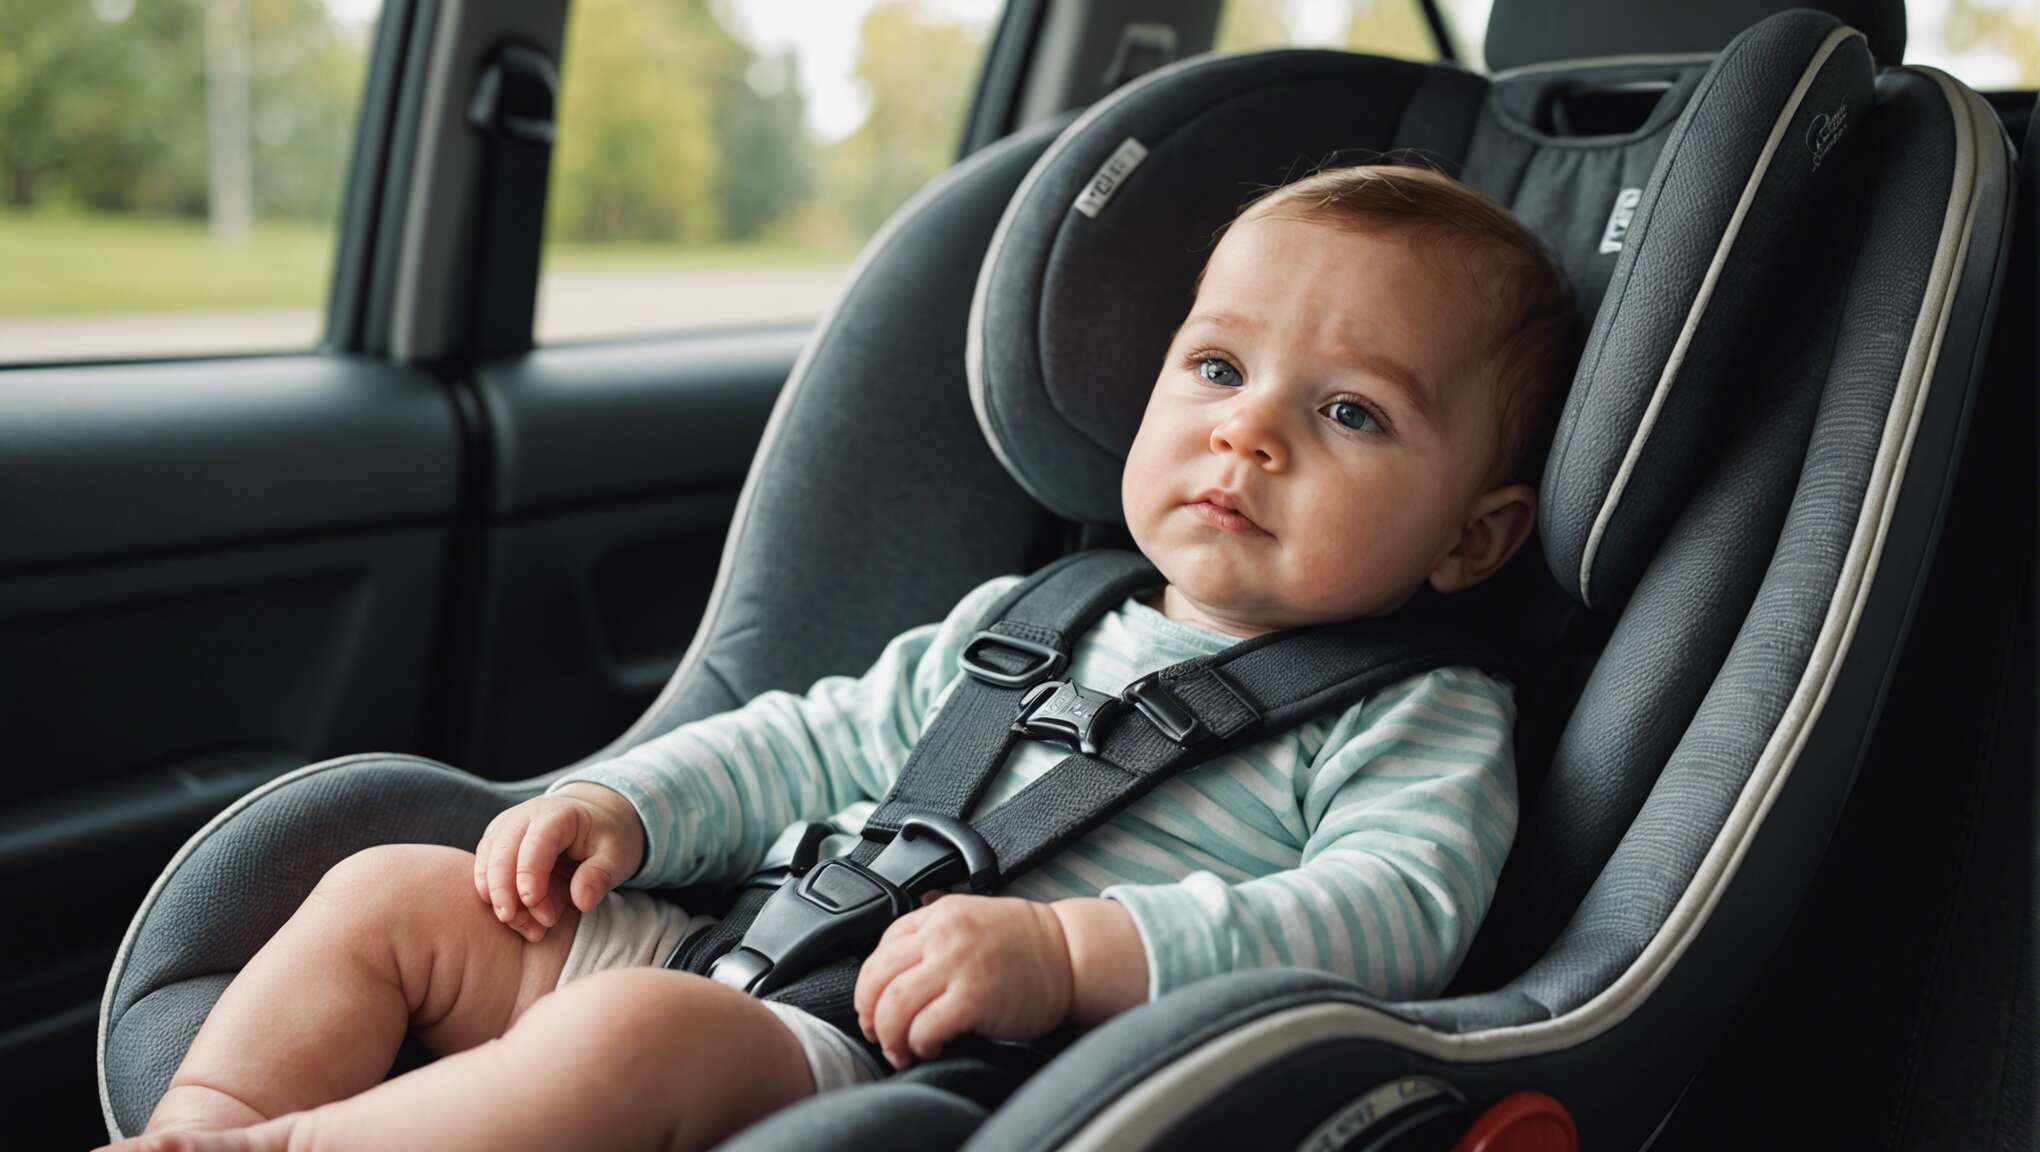 La sécurité avant tout : installer correctement bébé dans son nouveau siège